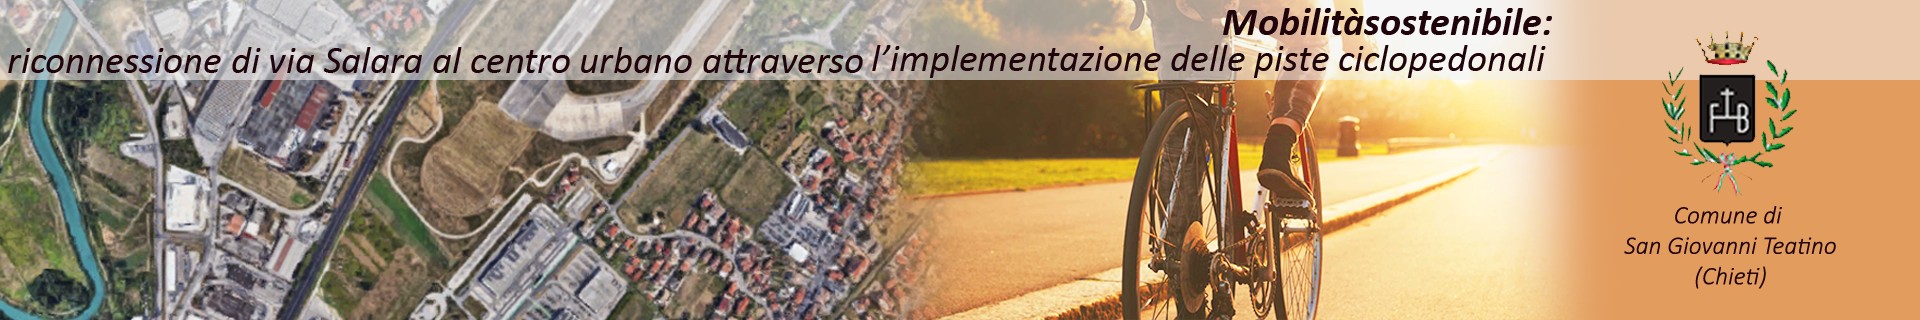 “Mobilità sostenibile: riconnessione di via Salara al centro urbano attraverso
l’implementazione delle piste ciclopedonali”